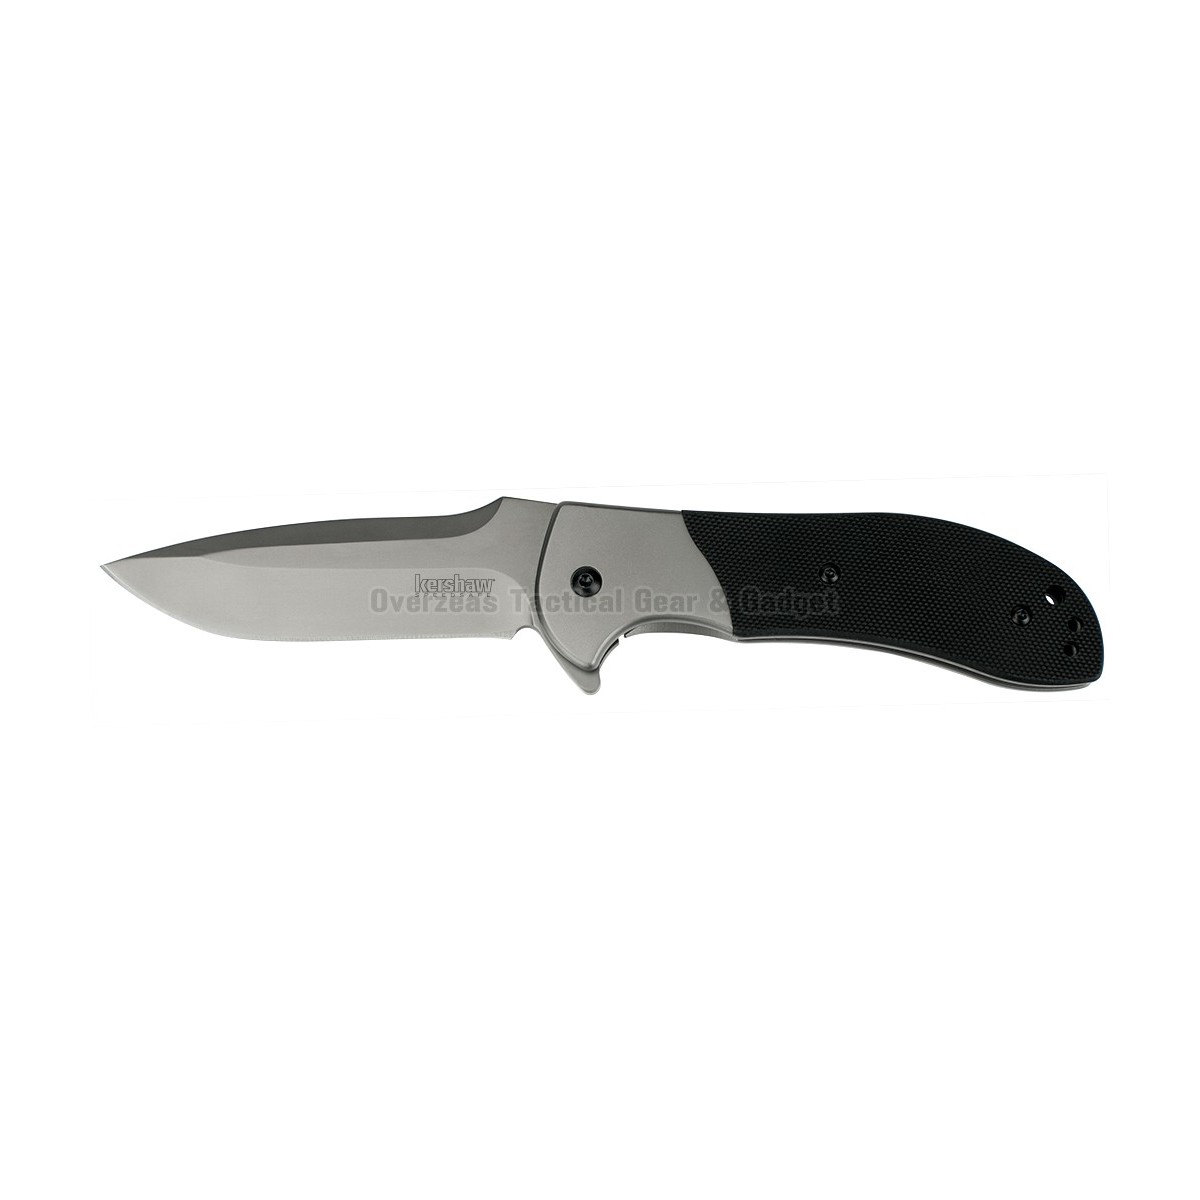 มีดพับ Kershaw Scrambler Flipper Assisted Opening Knife (3.5" Grey) 3890